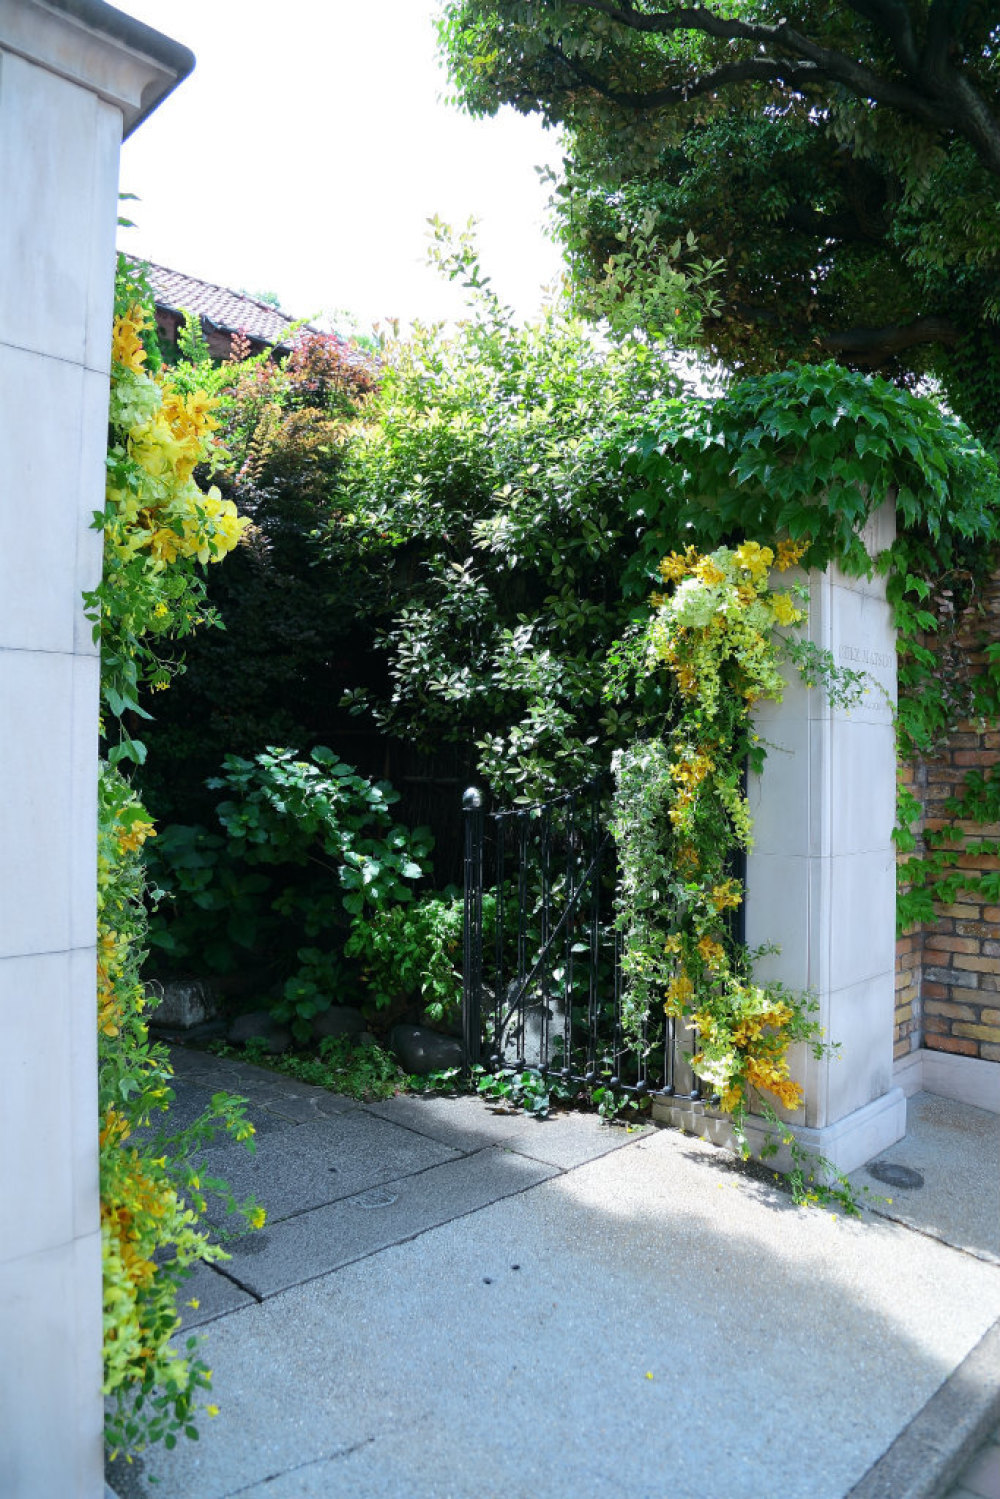 初夏の装花 3種の蘭の門柱装花 シェ松尾松濤レストラン様のウェディングへ_a0042928_21092552.jpg